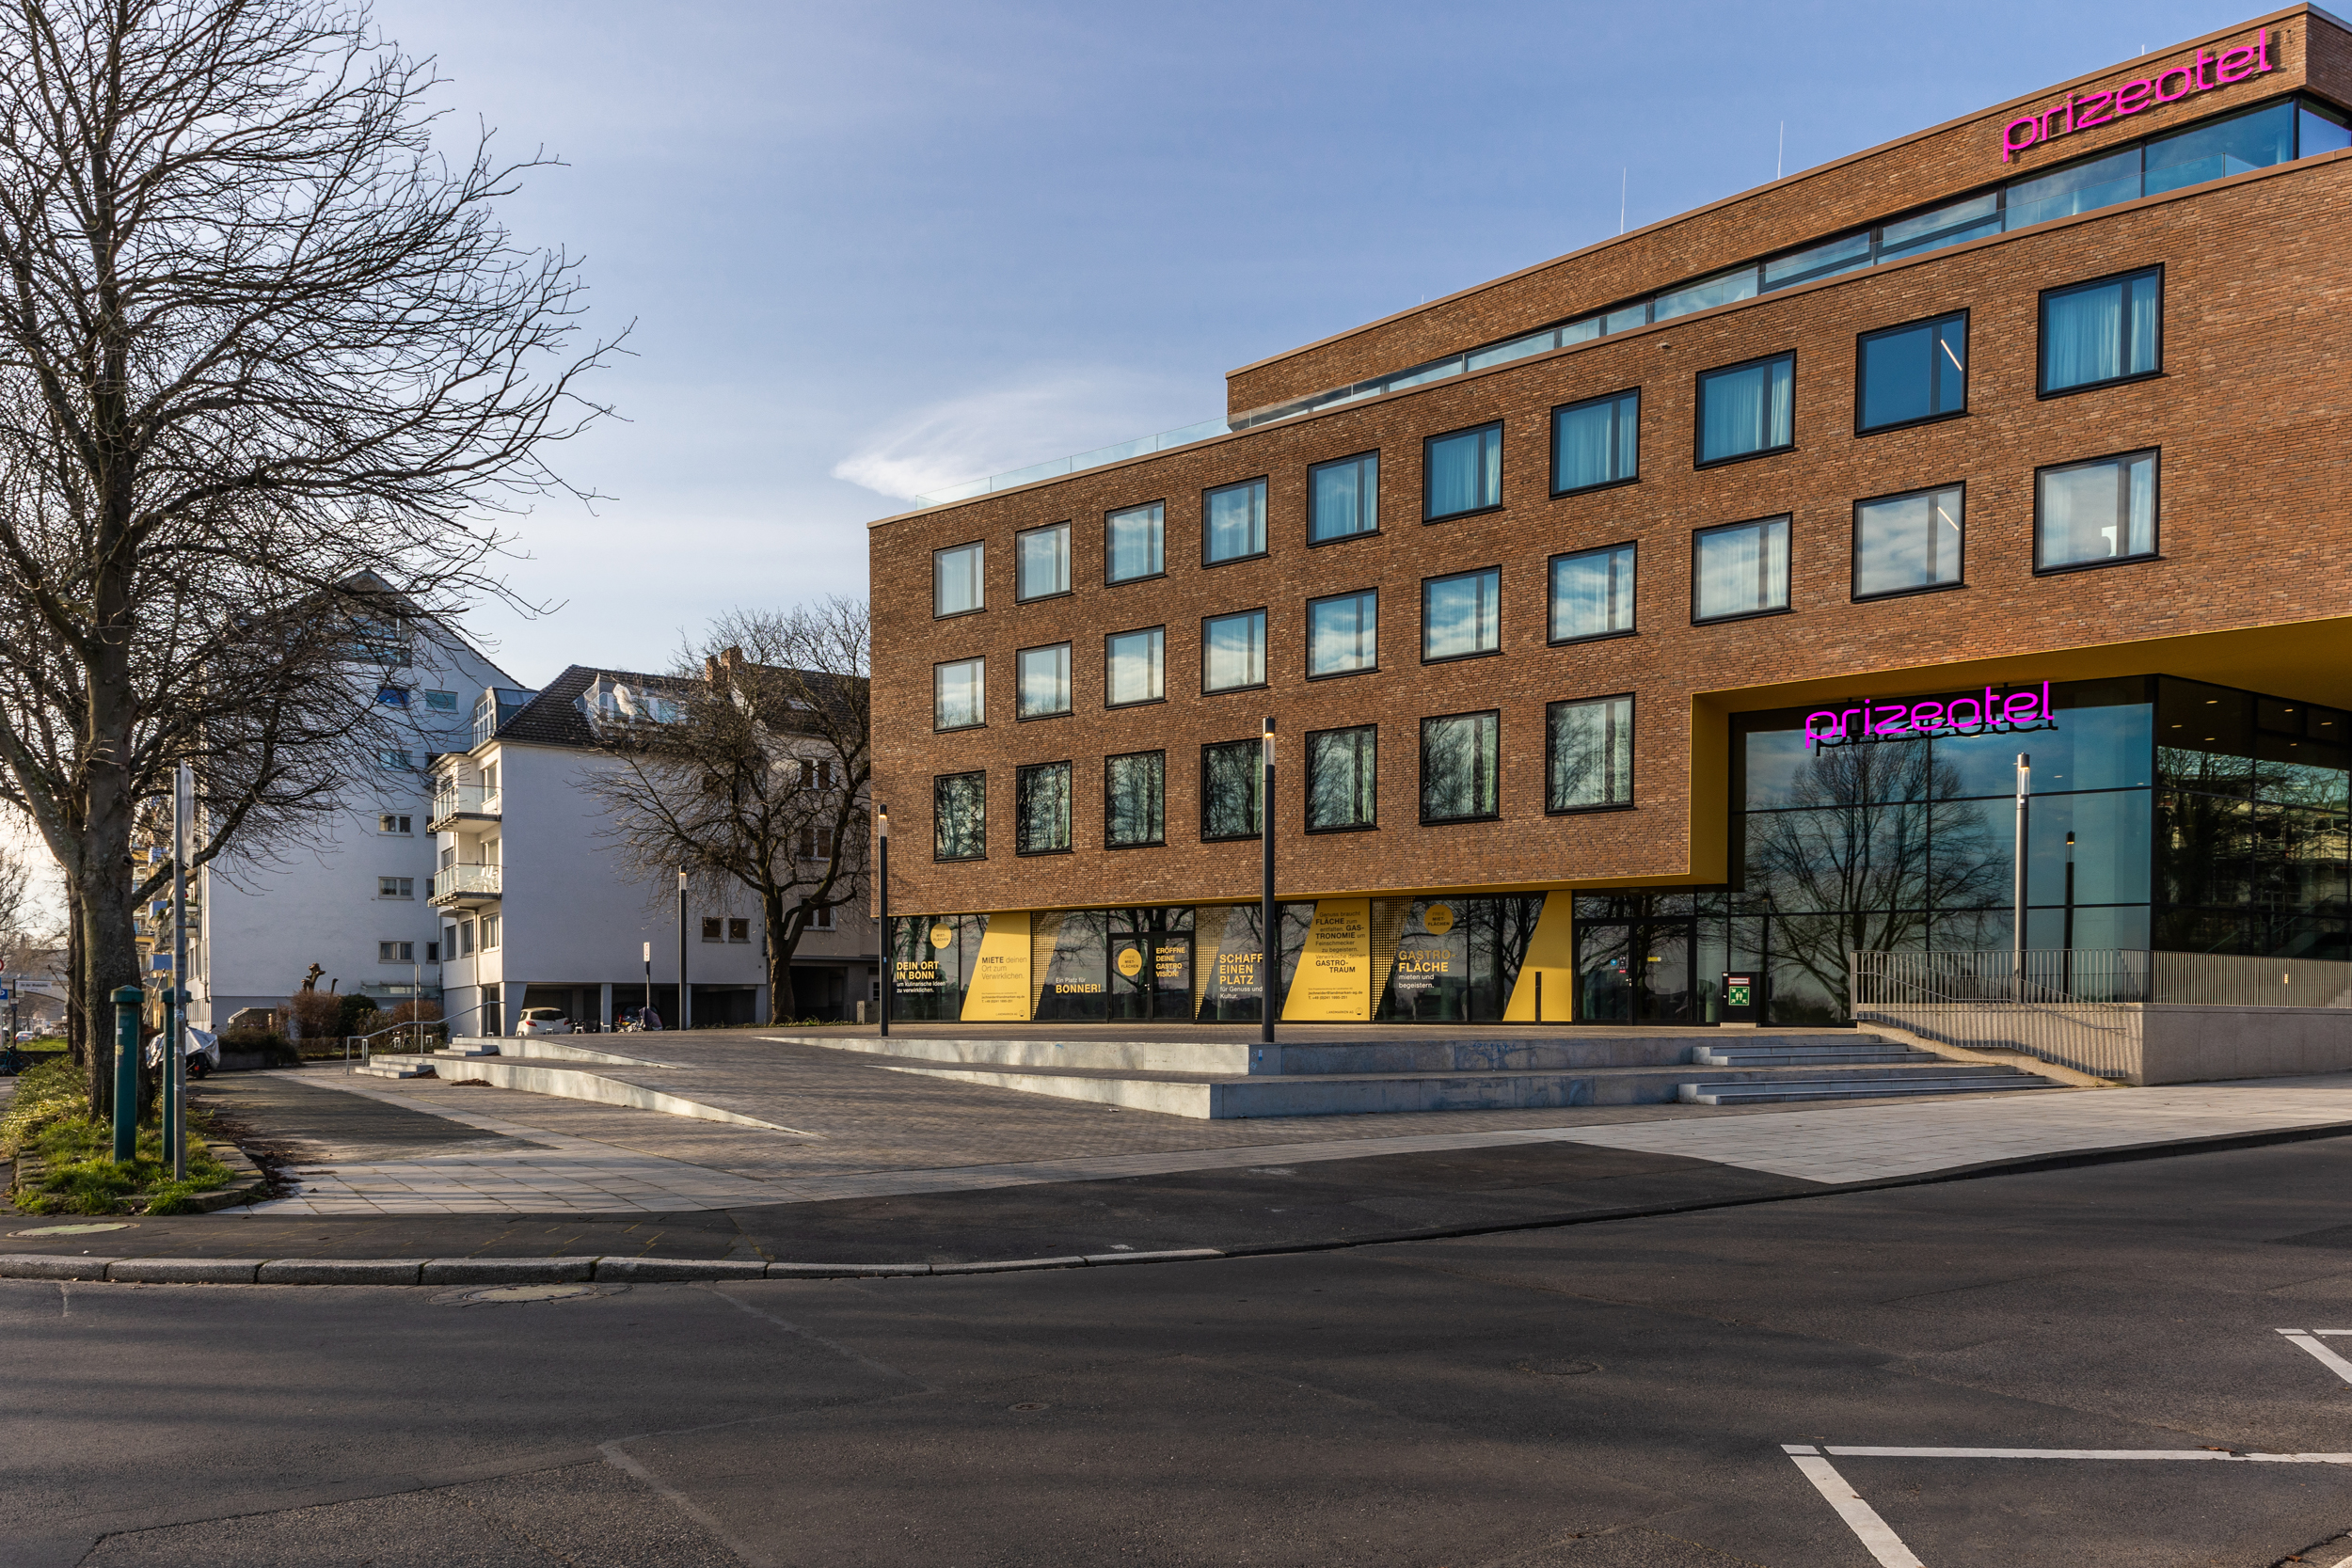 Die braune Außenfassade und der Parkplatz des prizeotels in Bonn-City